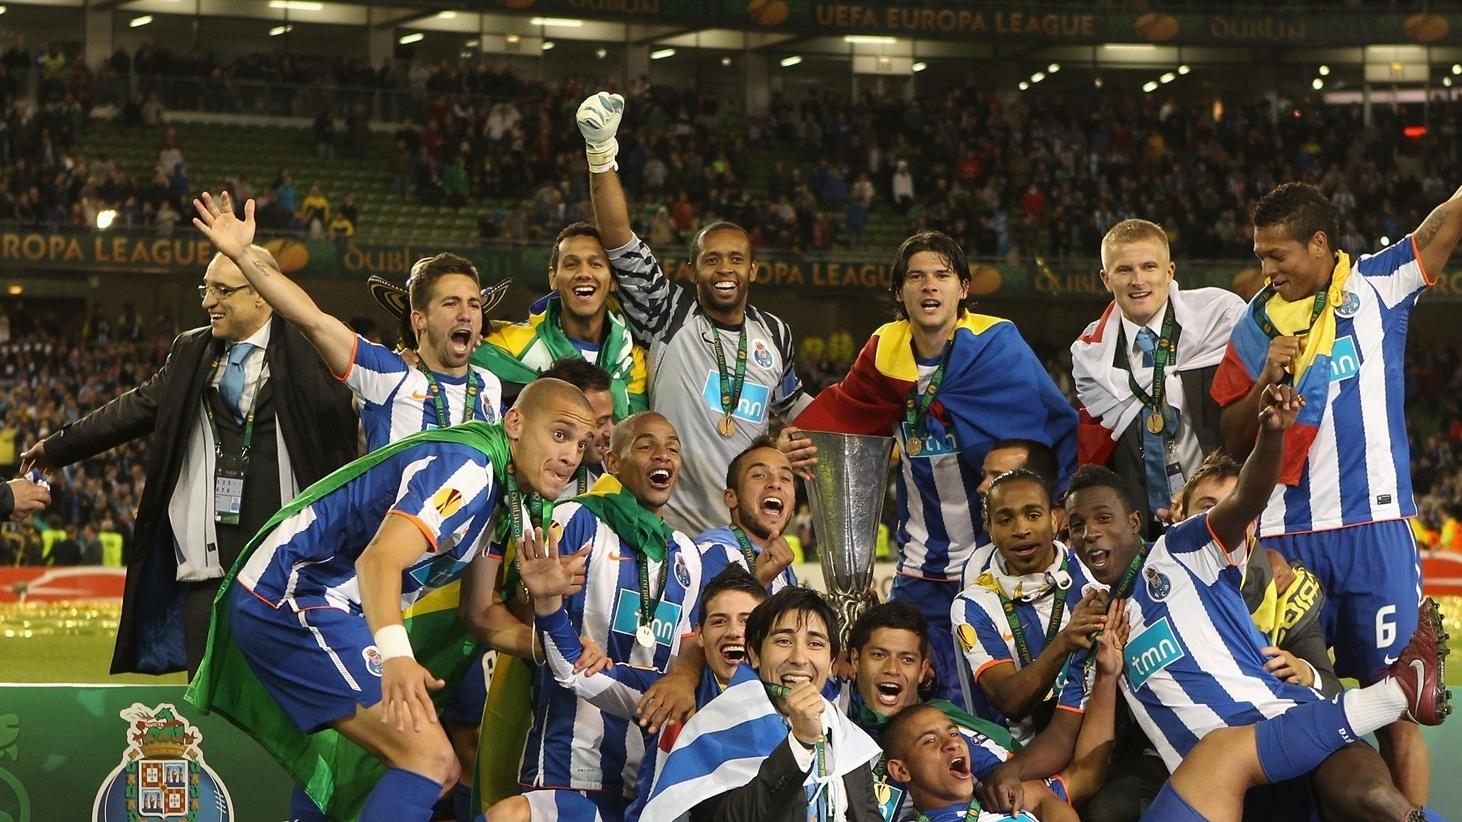 La liesse à Porto, pour le retour des héros | UEFA Europa League | UEFA.com